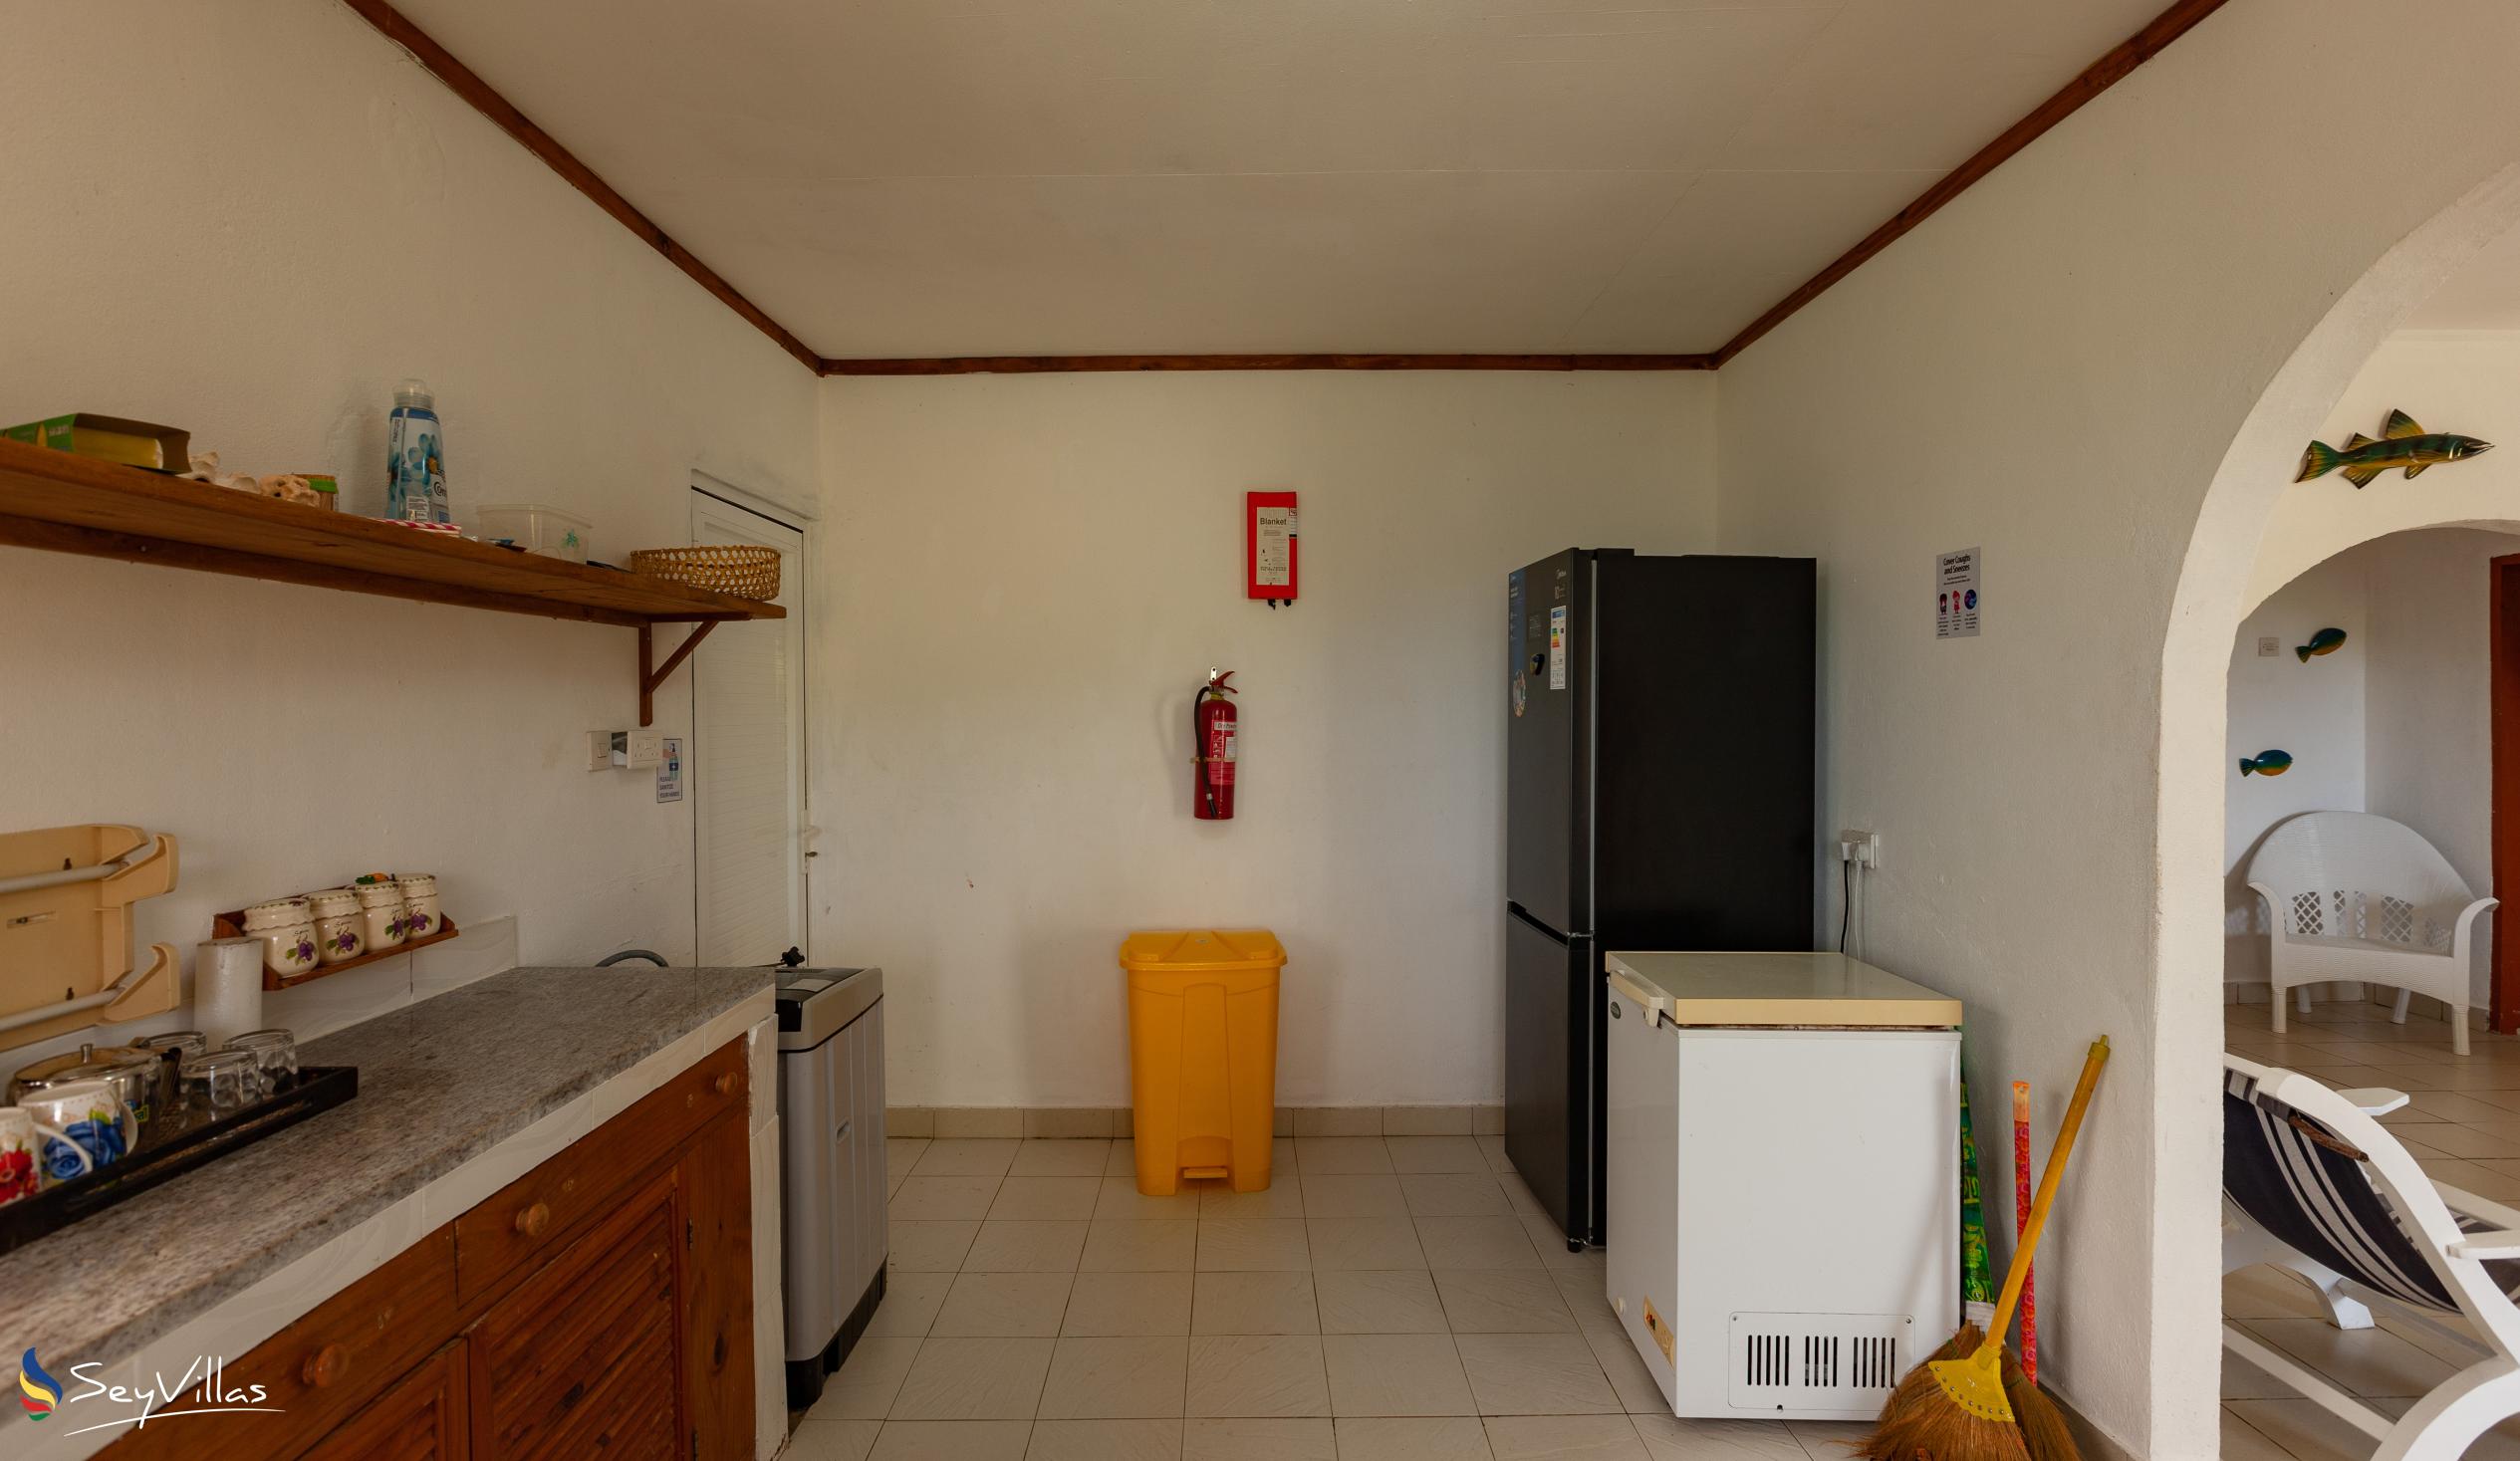 Foto 36: Maison du Soleil - Intérieur - Praslin (Seychelles)